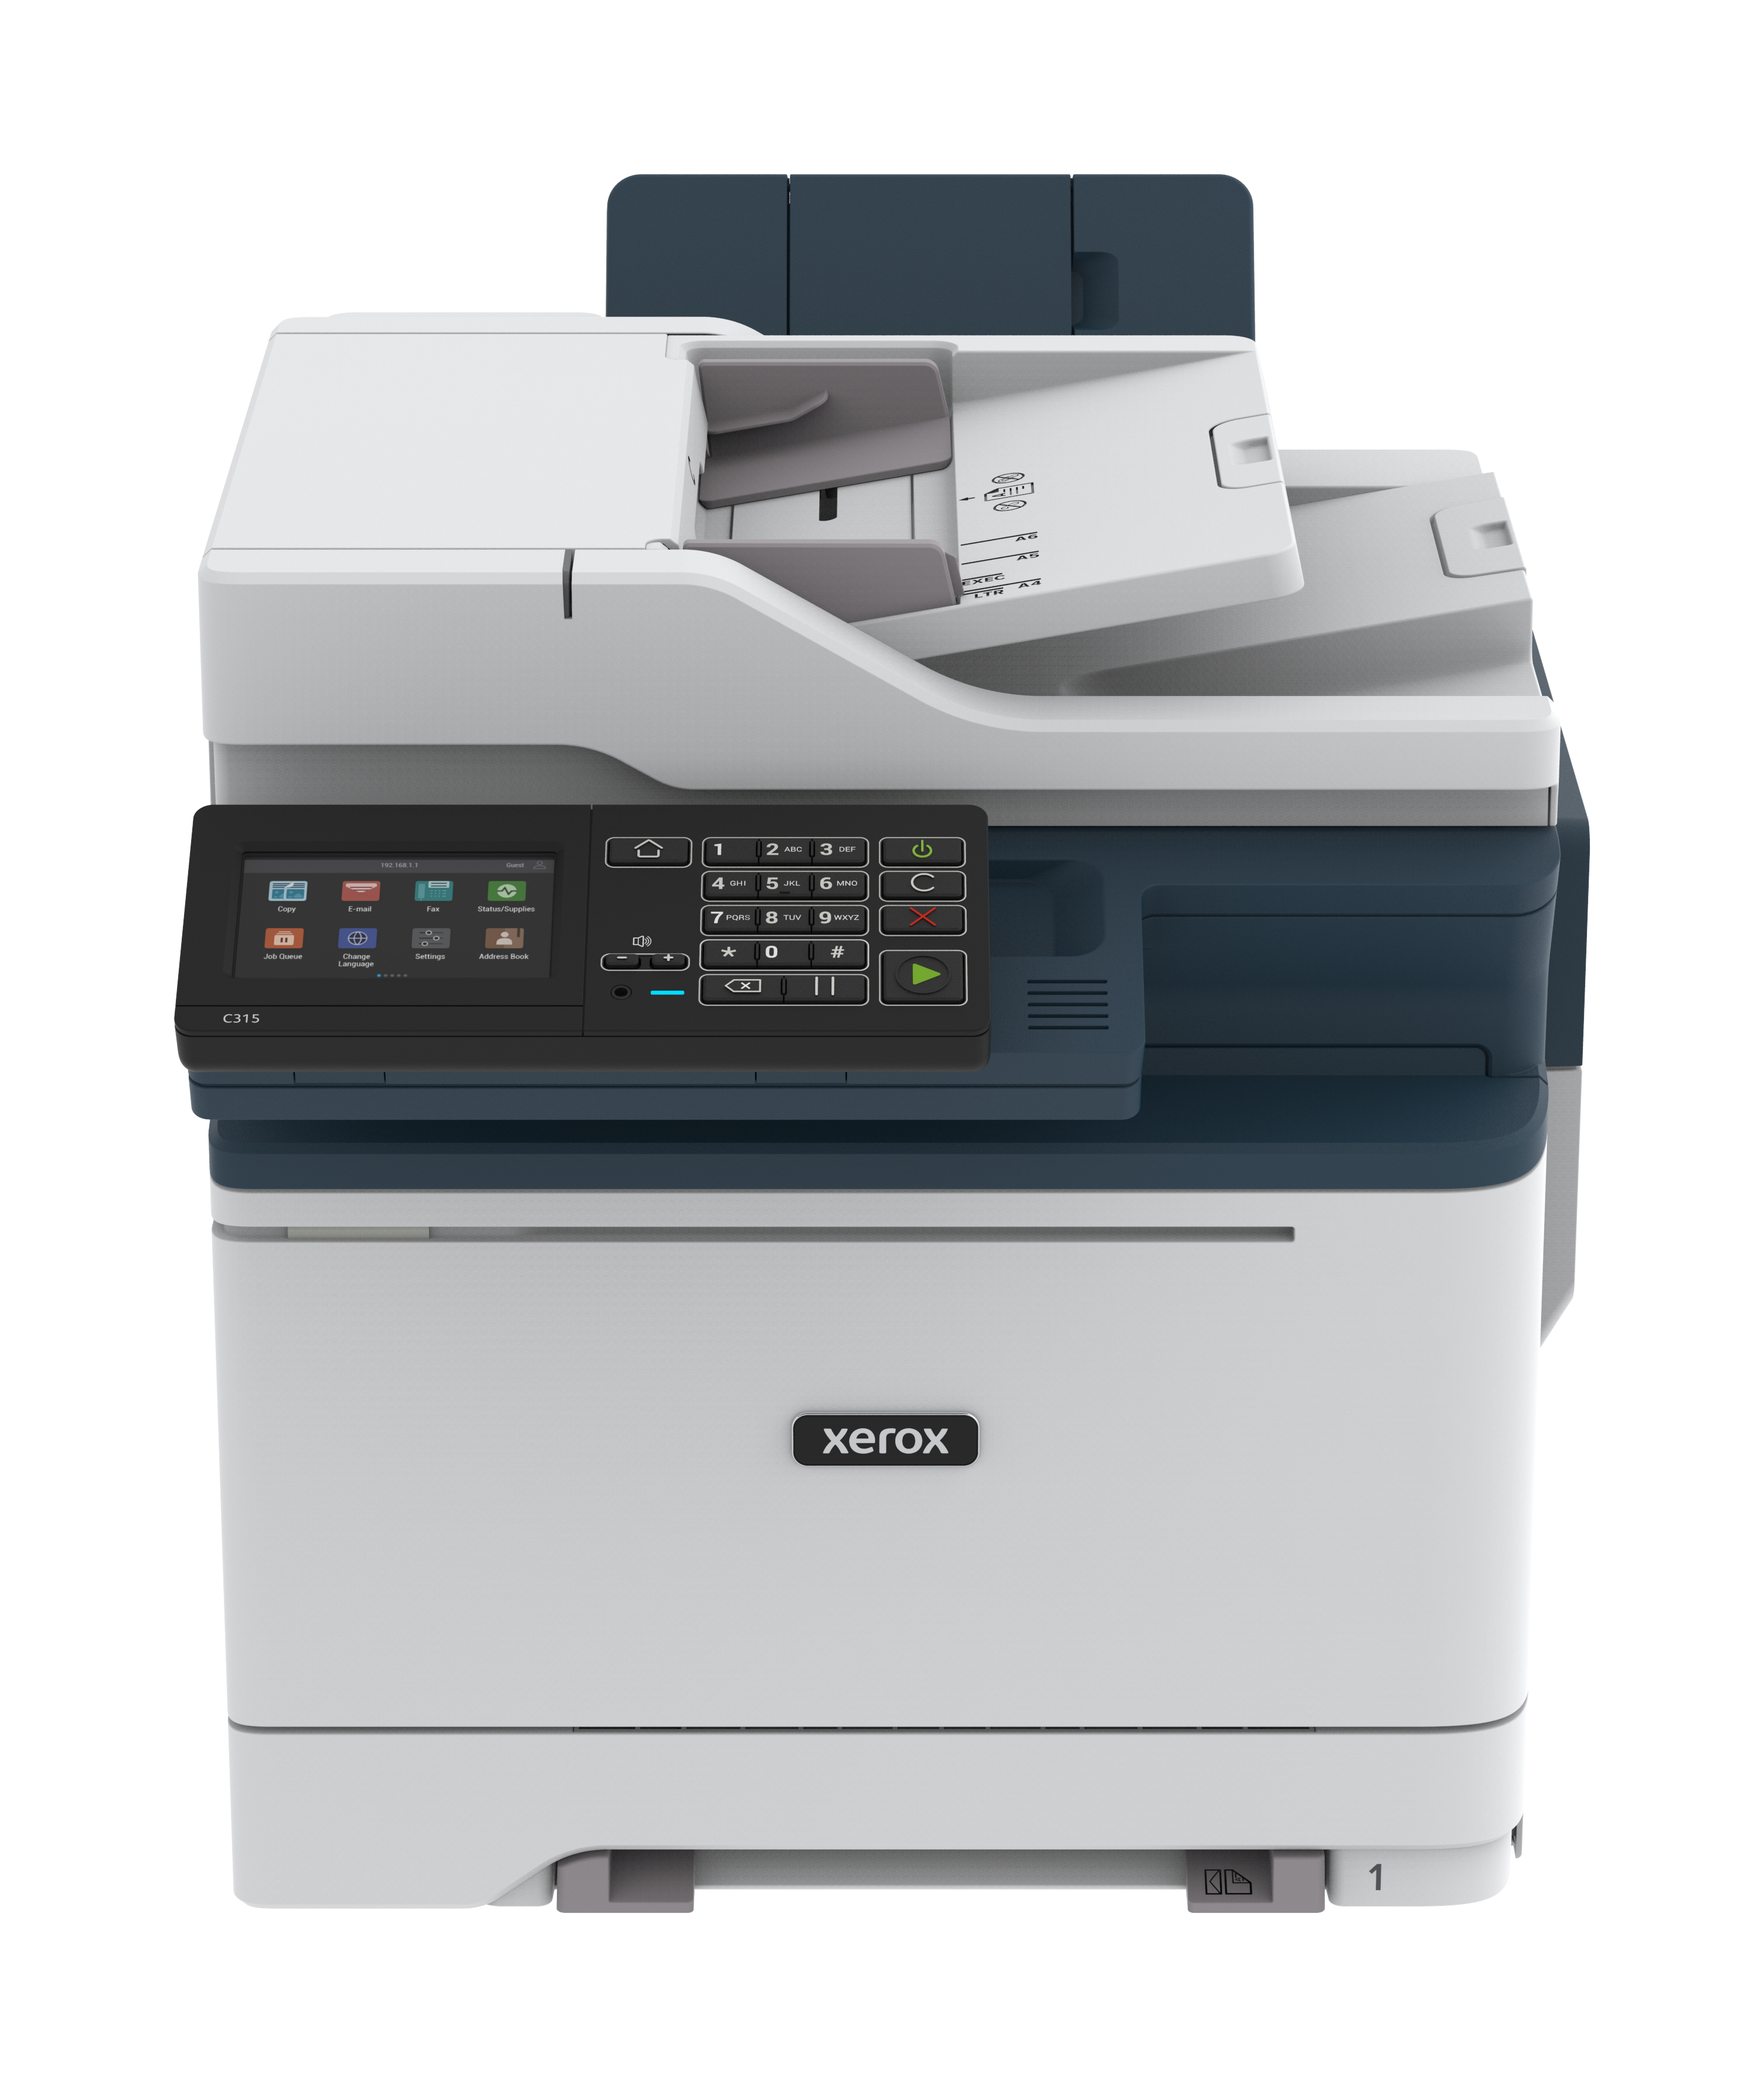 Xerox C315 copie/impression/numérisation/télécopie recto verso sans fil A4,  33 ppm, PS3 PCL5e/6, 2 magasins, 251 feuilles C315V/DNI - Xerox